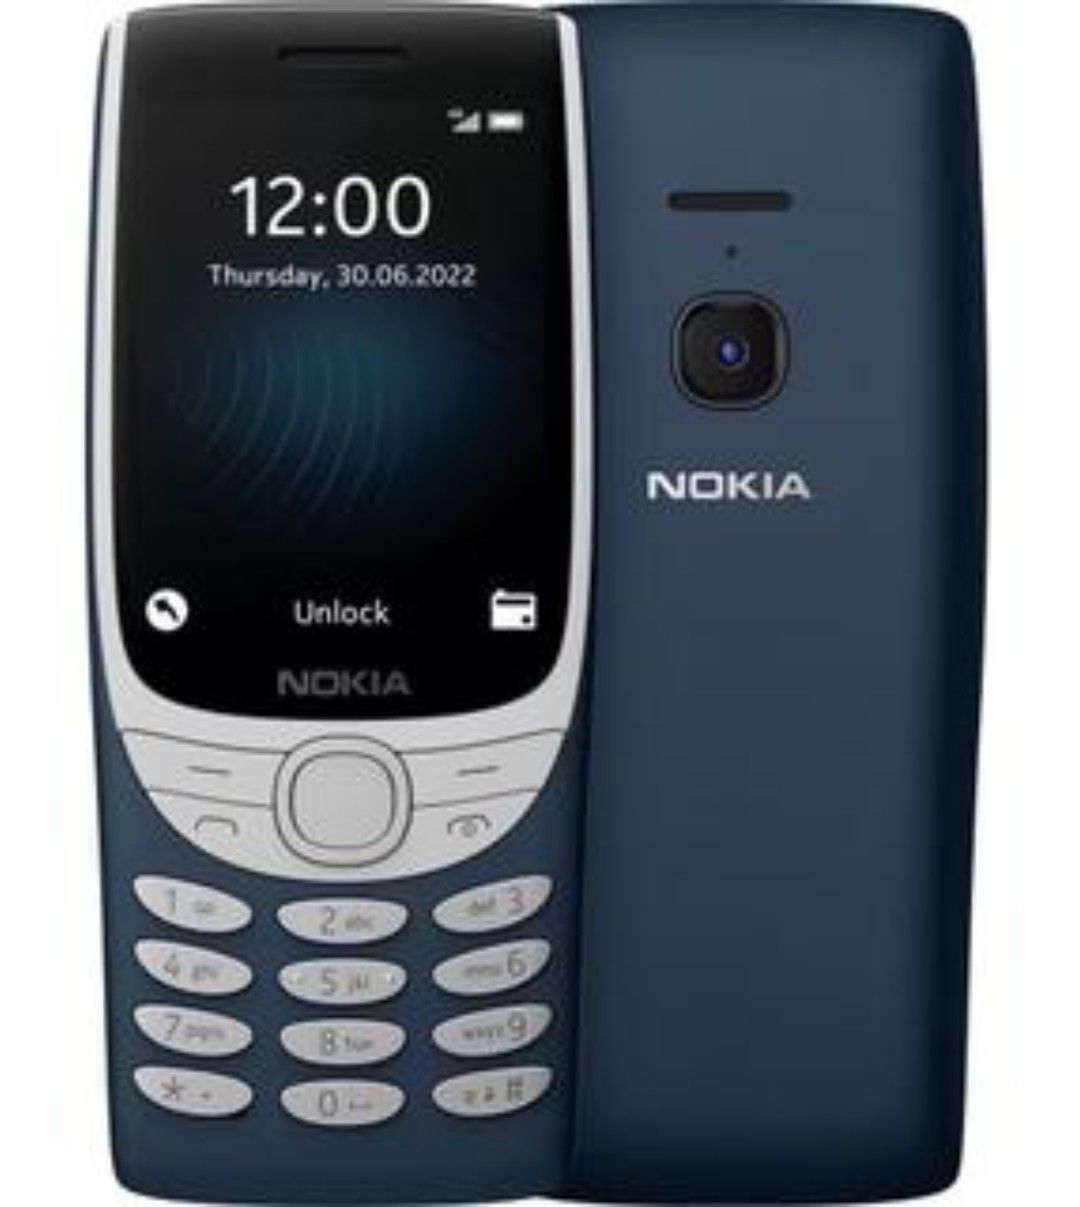 Điện Thoại Nokia 8210 4G - Hàng Chính Hãng